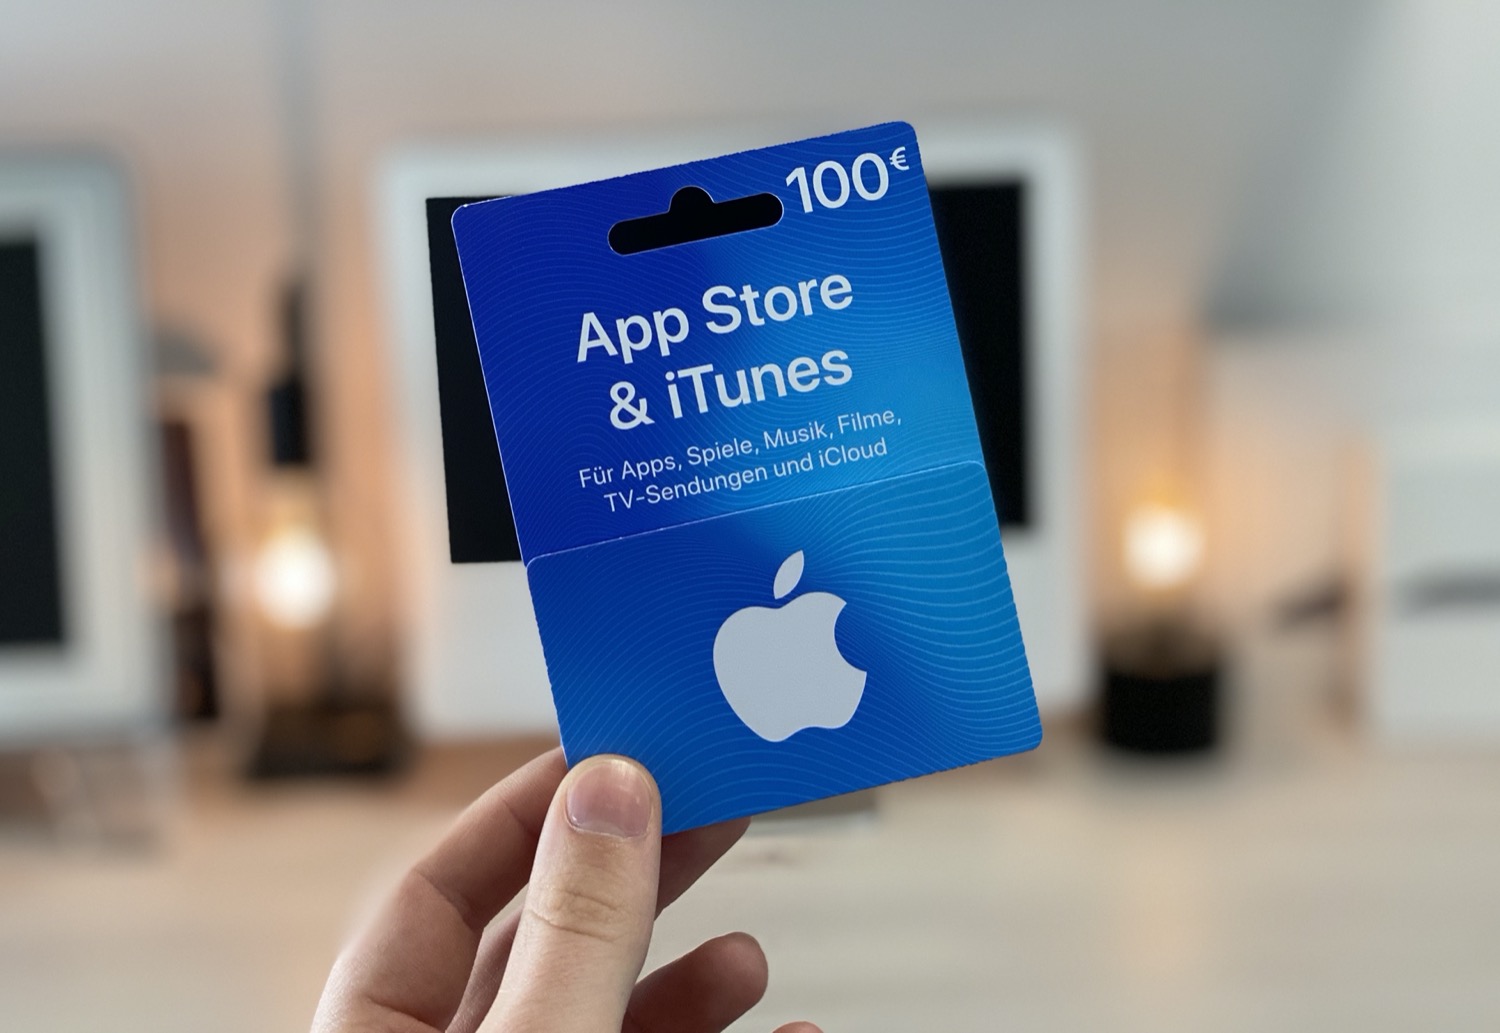 iTunes-Karten in dieser Woche mit 15 Prozent Bonus-Guthaben